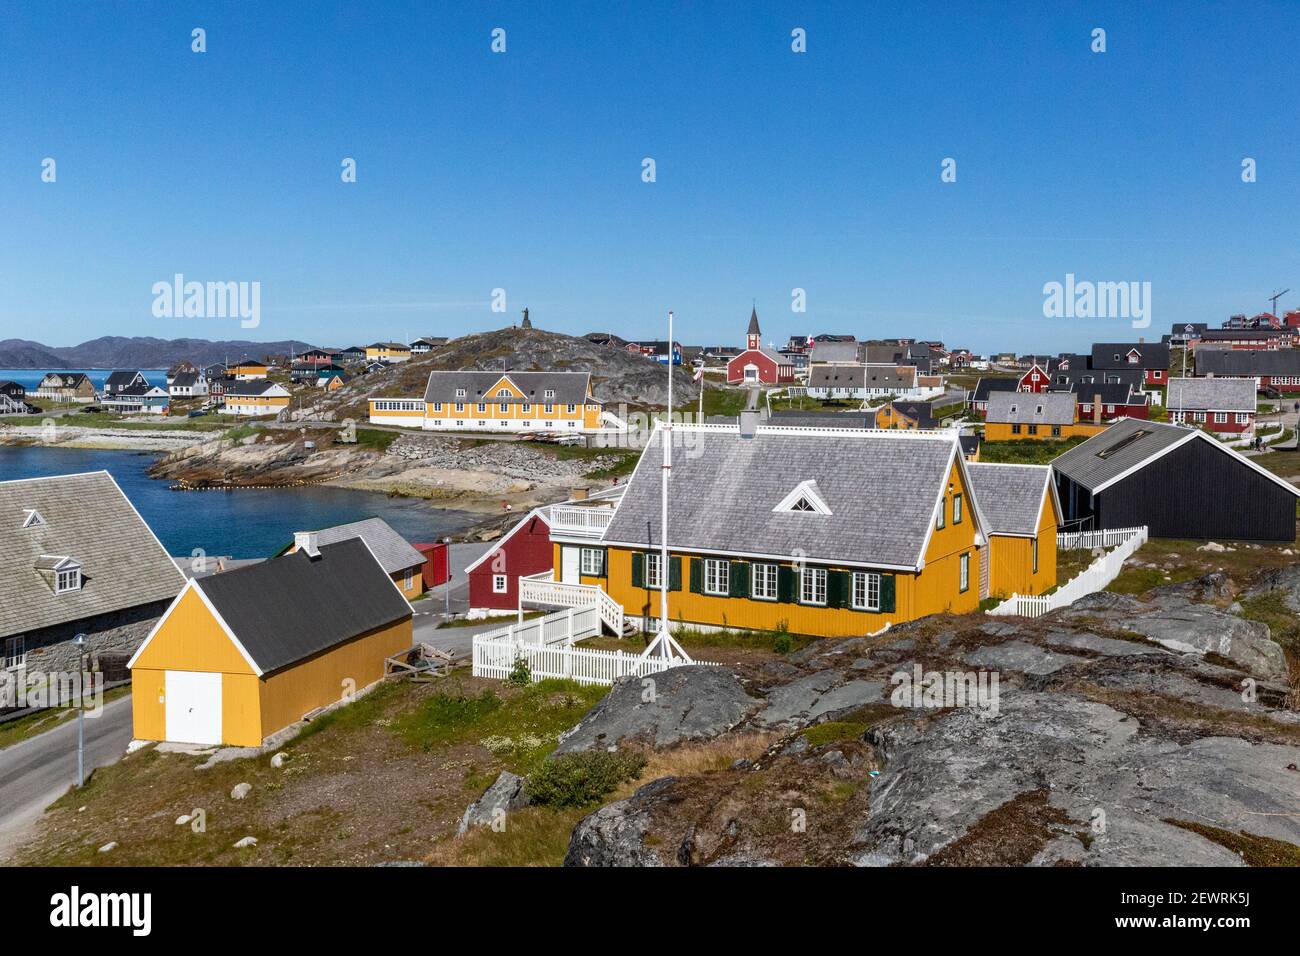 Nuuk (Godthab), la capitale et la plus grande ville du Groenland, sur la côte sud-ouest, Groenland, régions polaires Banque D'Images